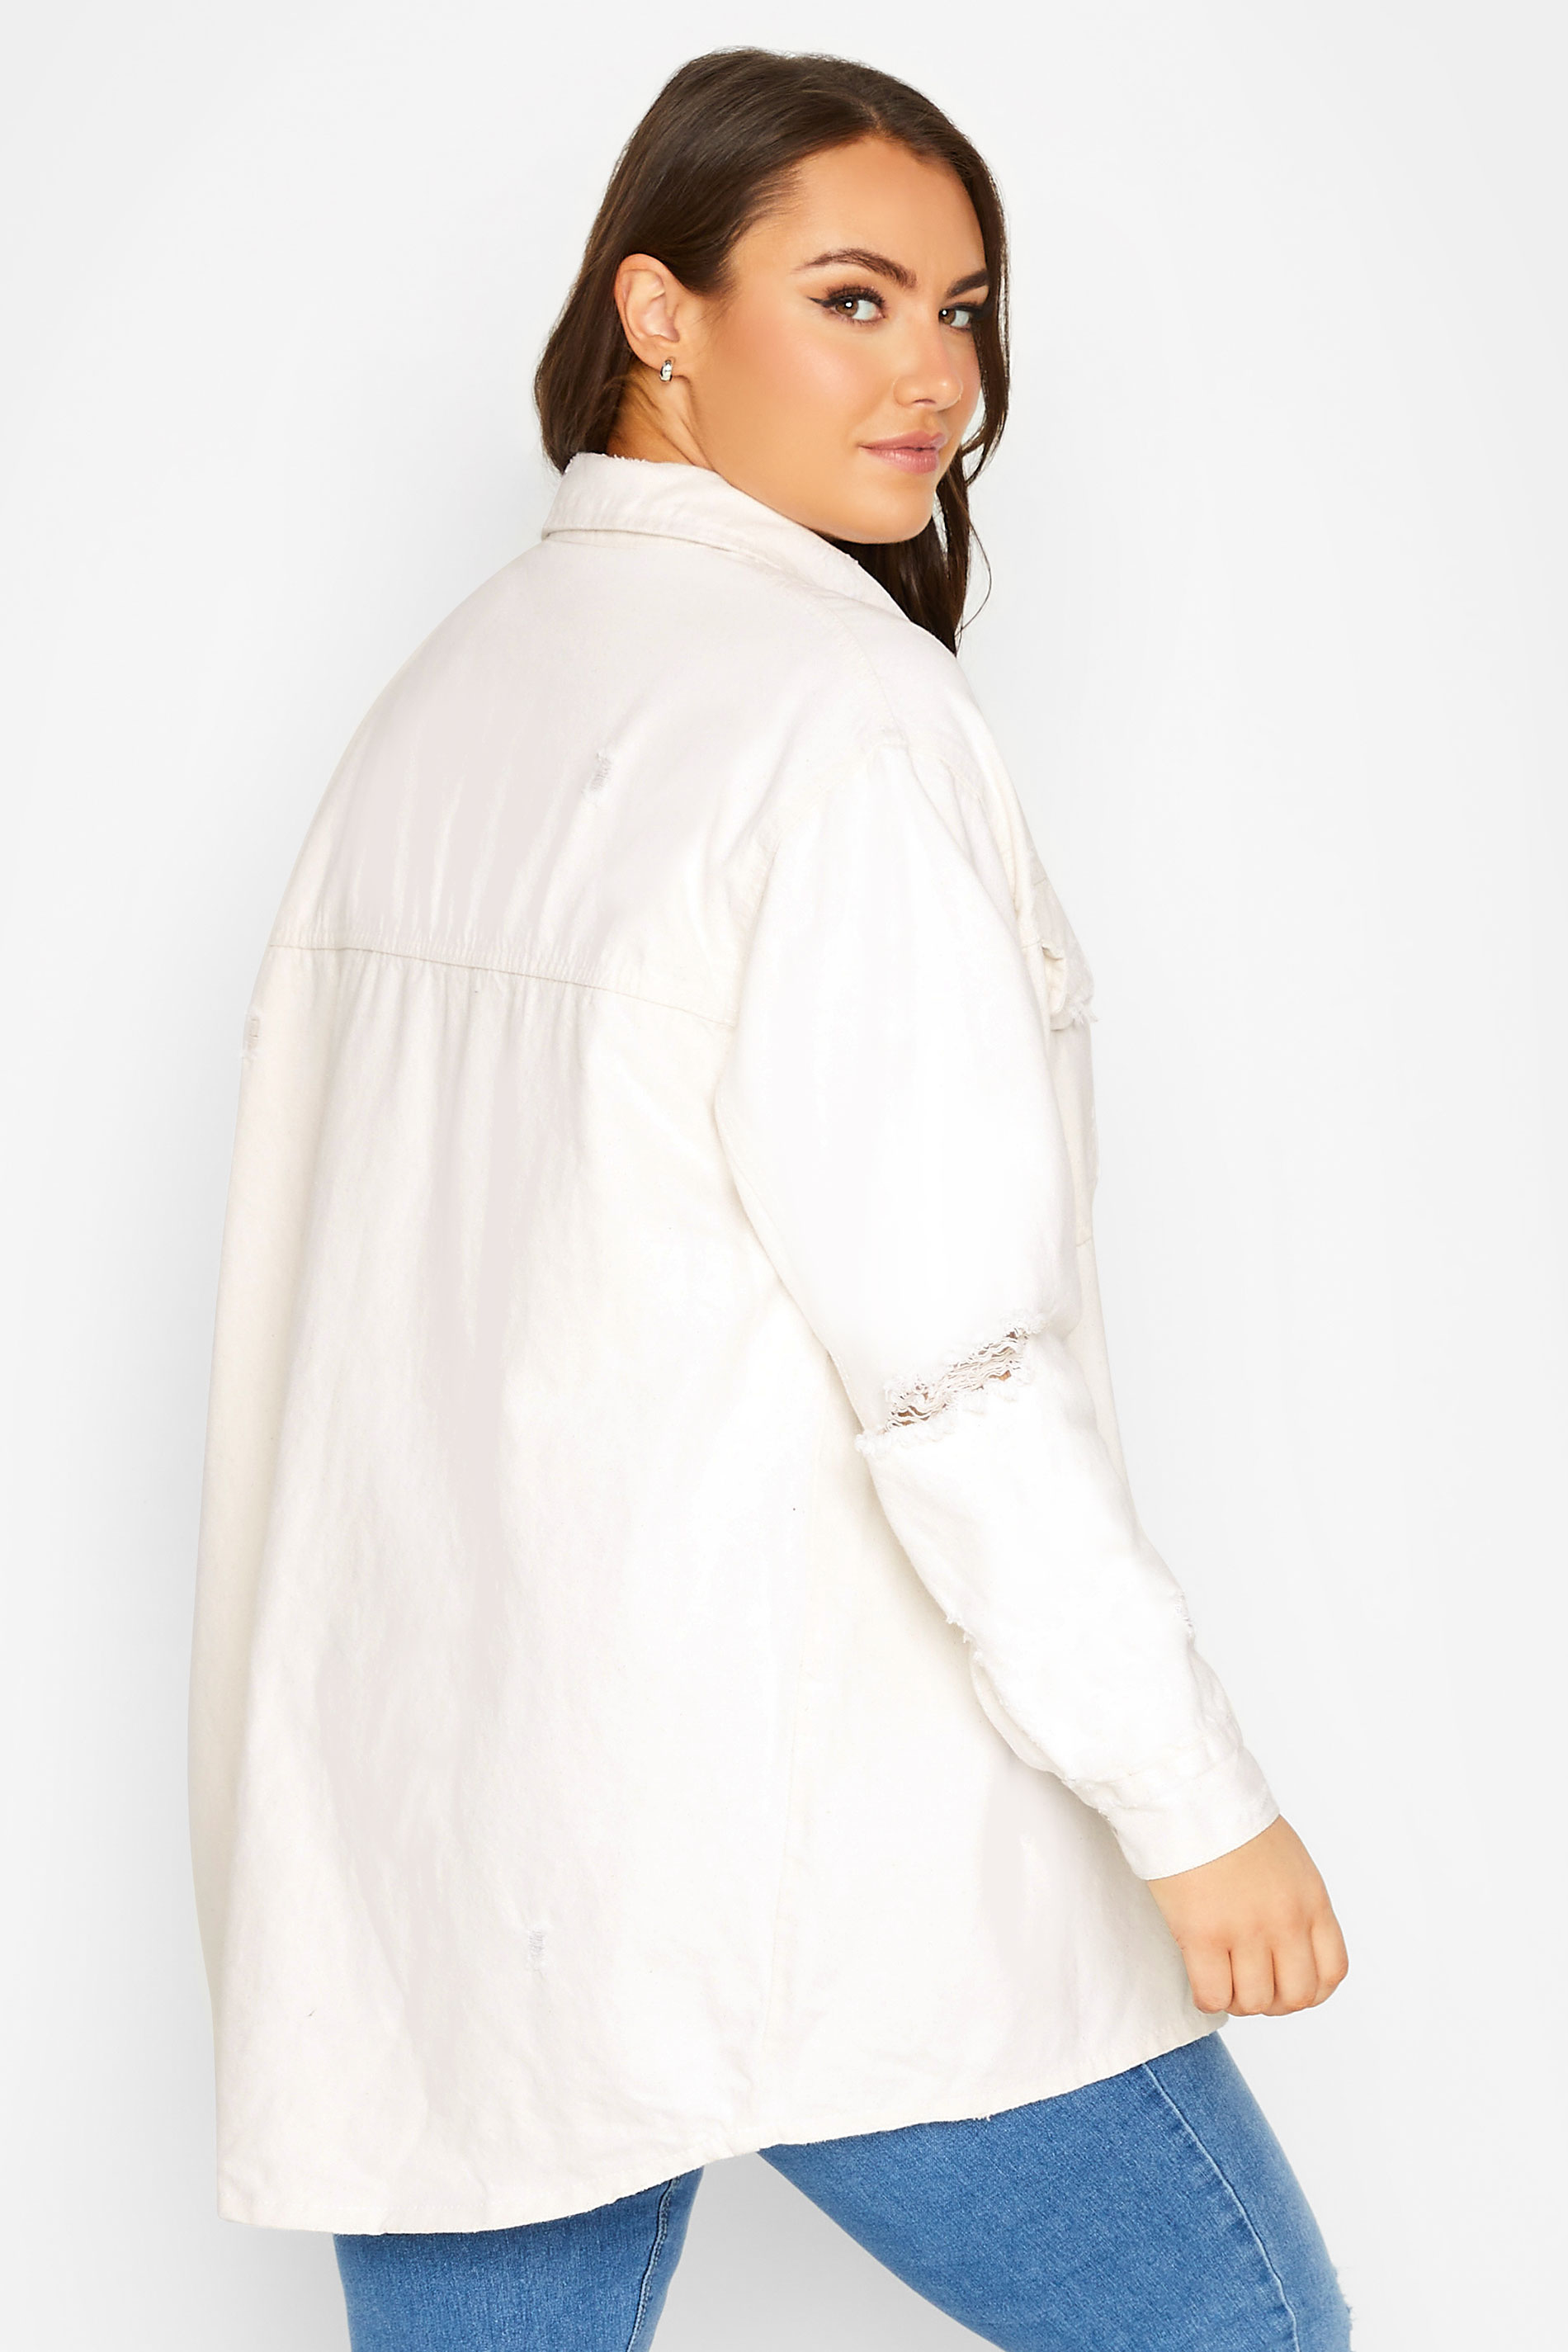 Plus Size Ivory White Western Style Distressed Denim Jacket  | Yours Clothing 3